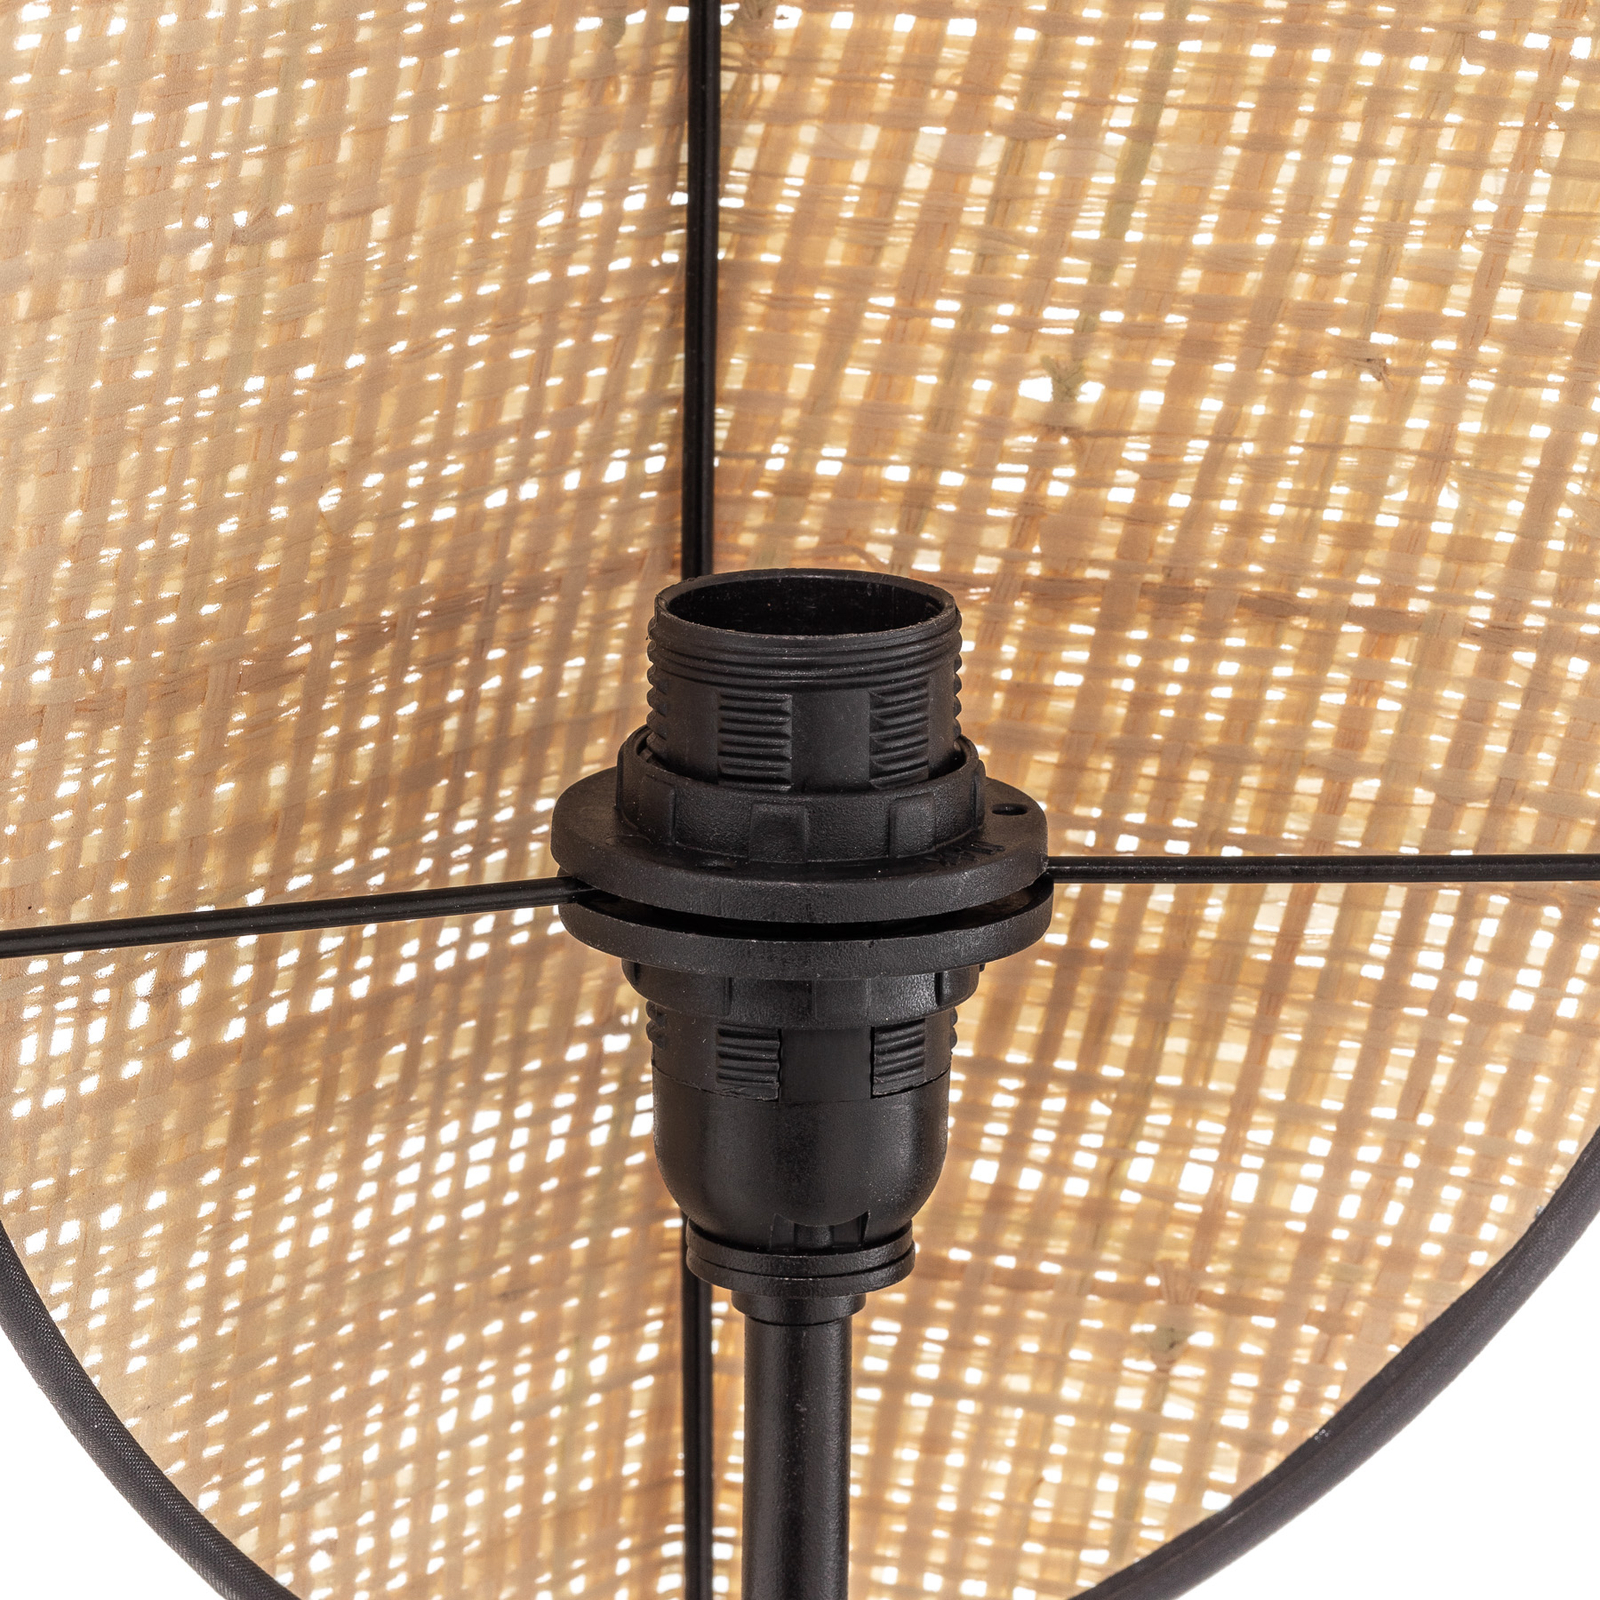 Vene væglampe, sort/rattanlook, 2 lyskilder